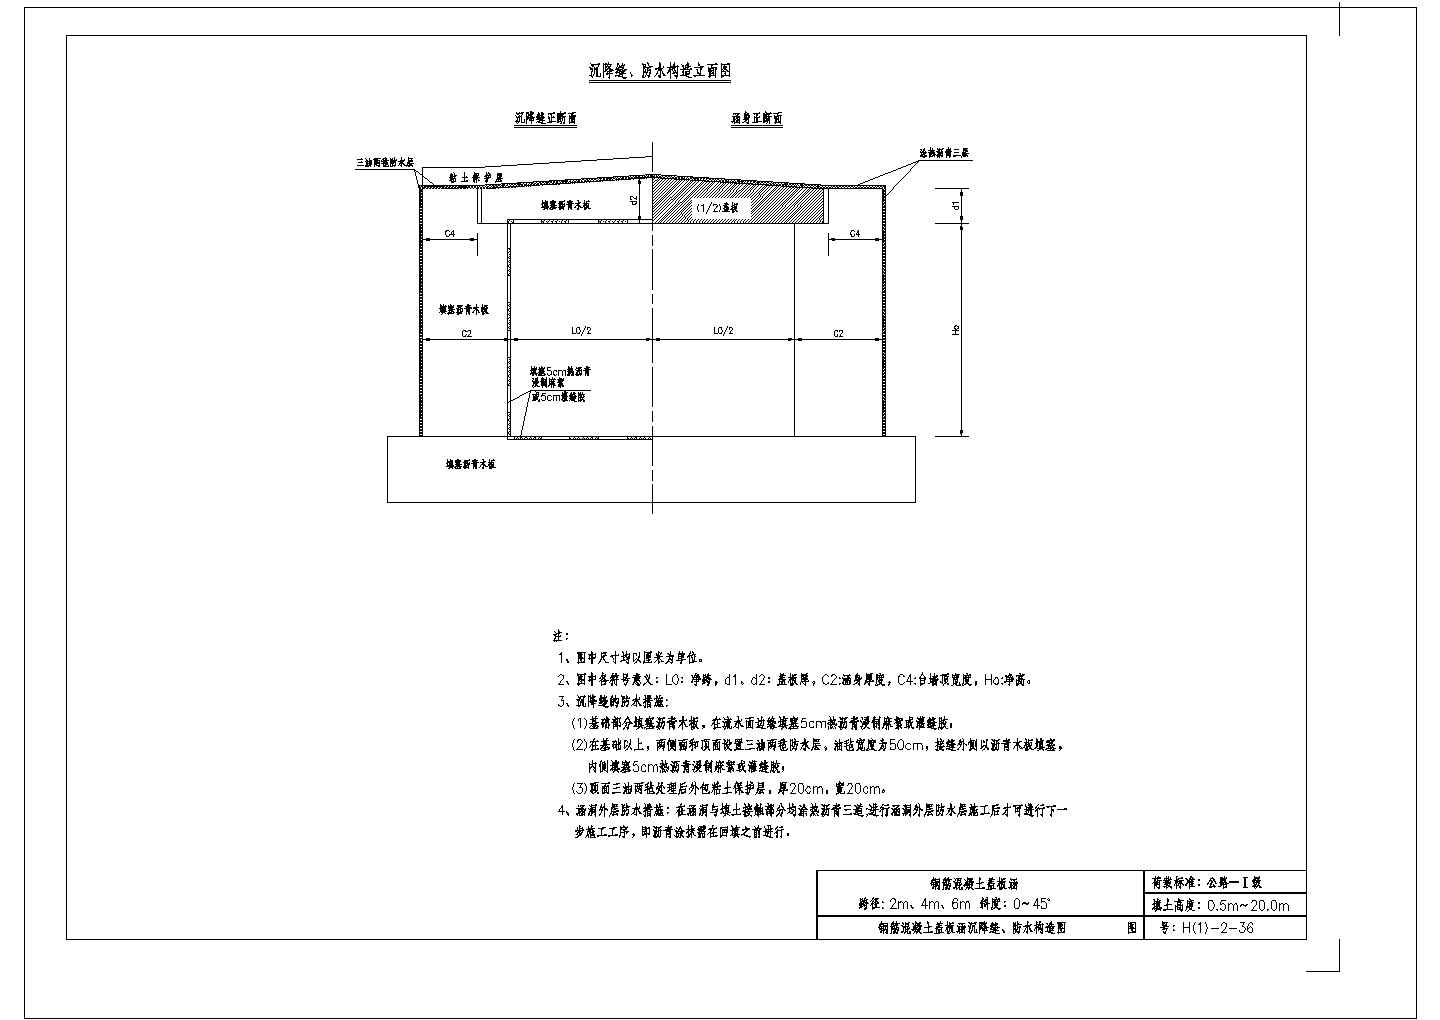 涵洞设计参考图《钢筋混凝土盖板涵》第二册（CAD版）